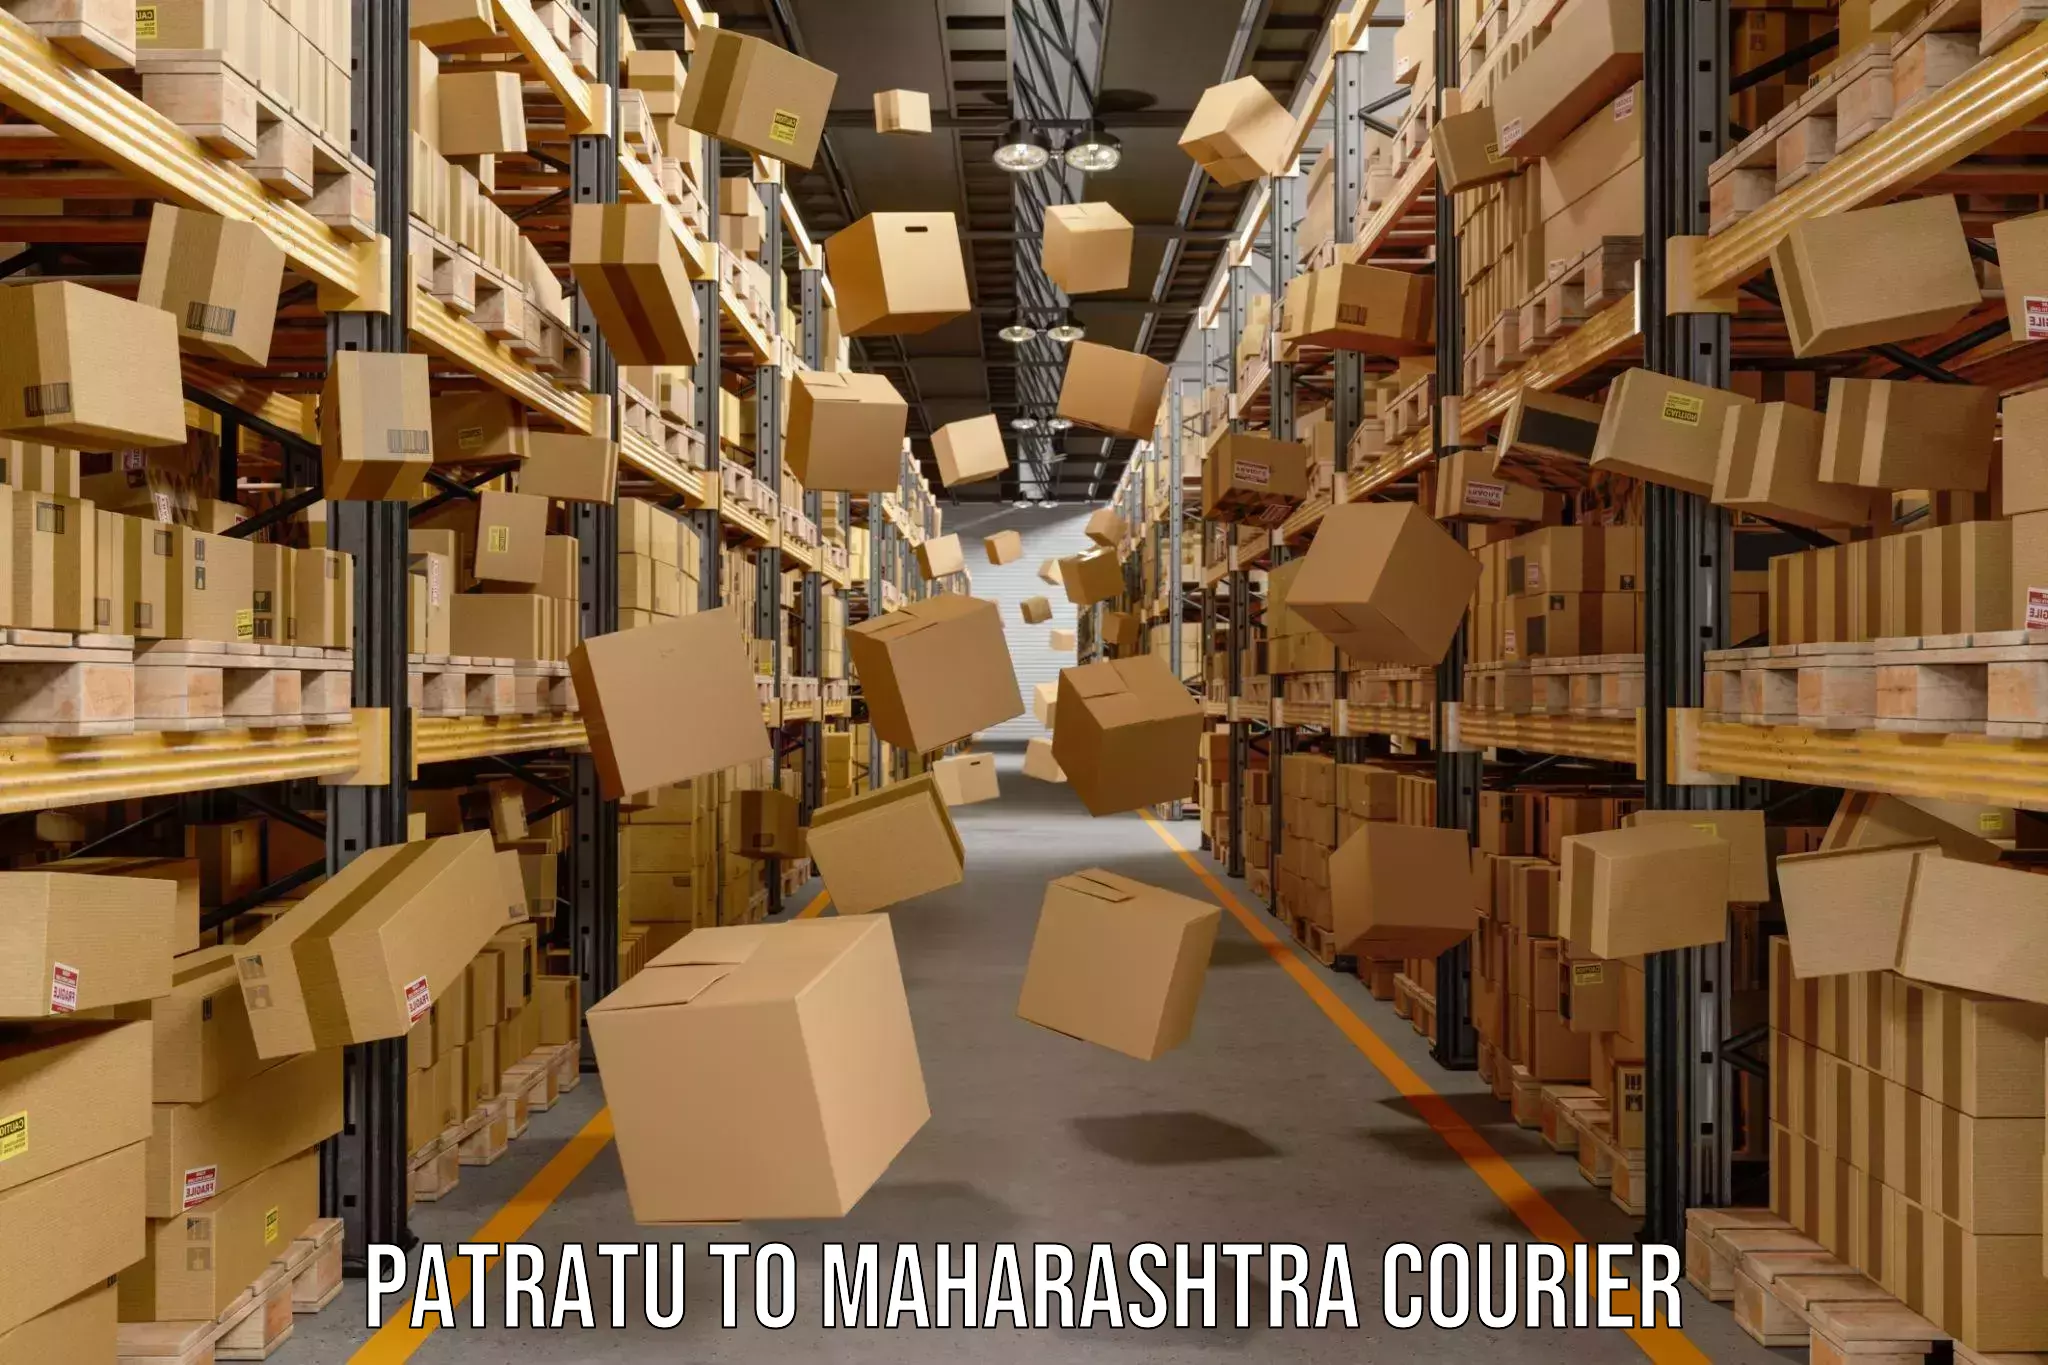 Advanced courier platforms Patratu to Maharashtra